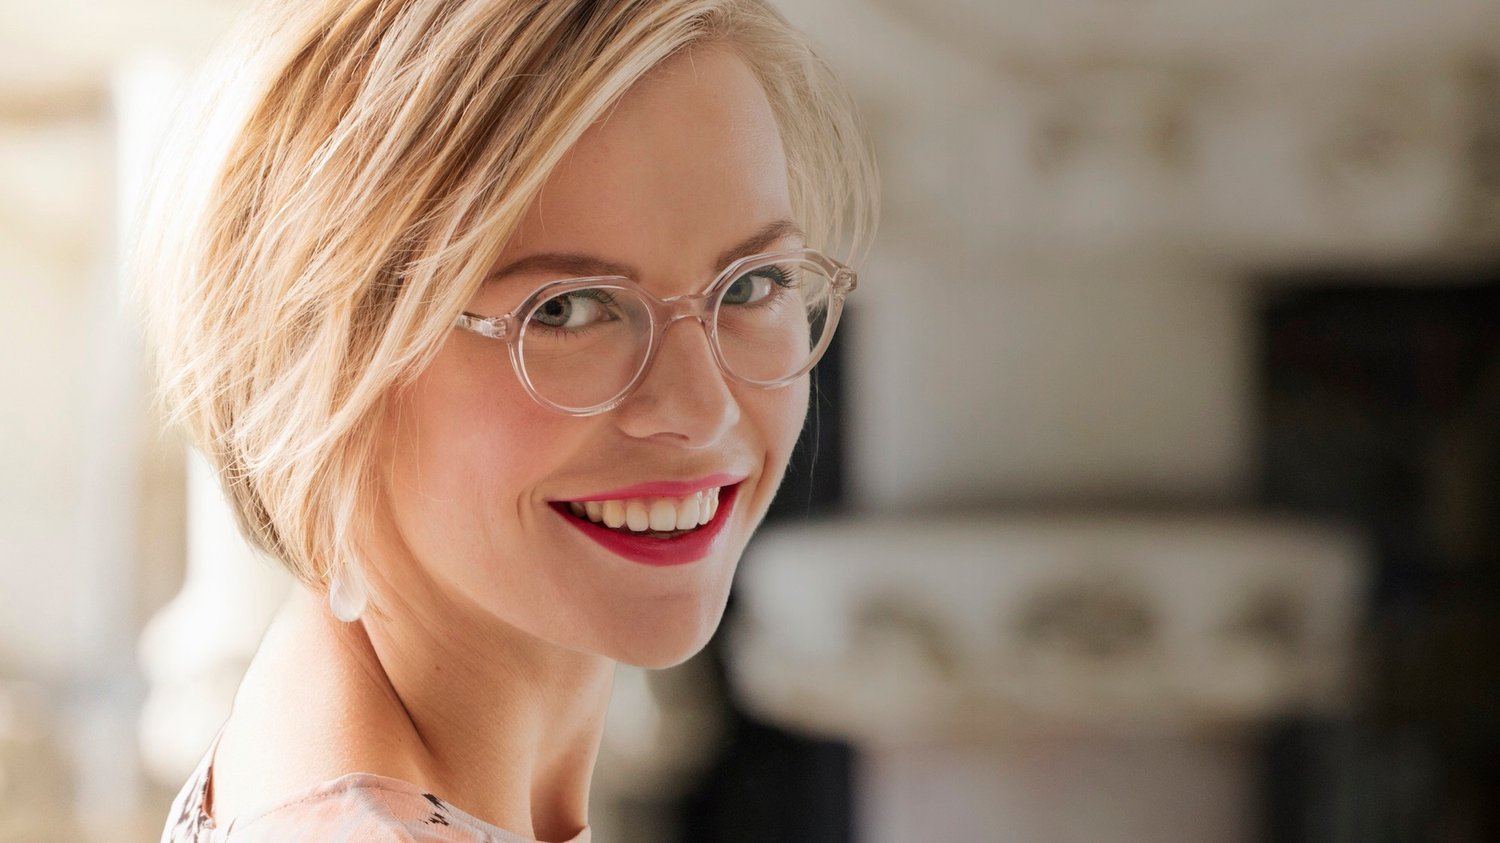 8 conseils pour bien comprendre les garanties de mes lunettes